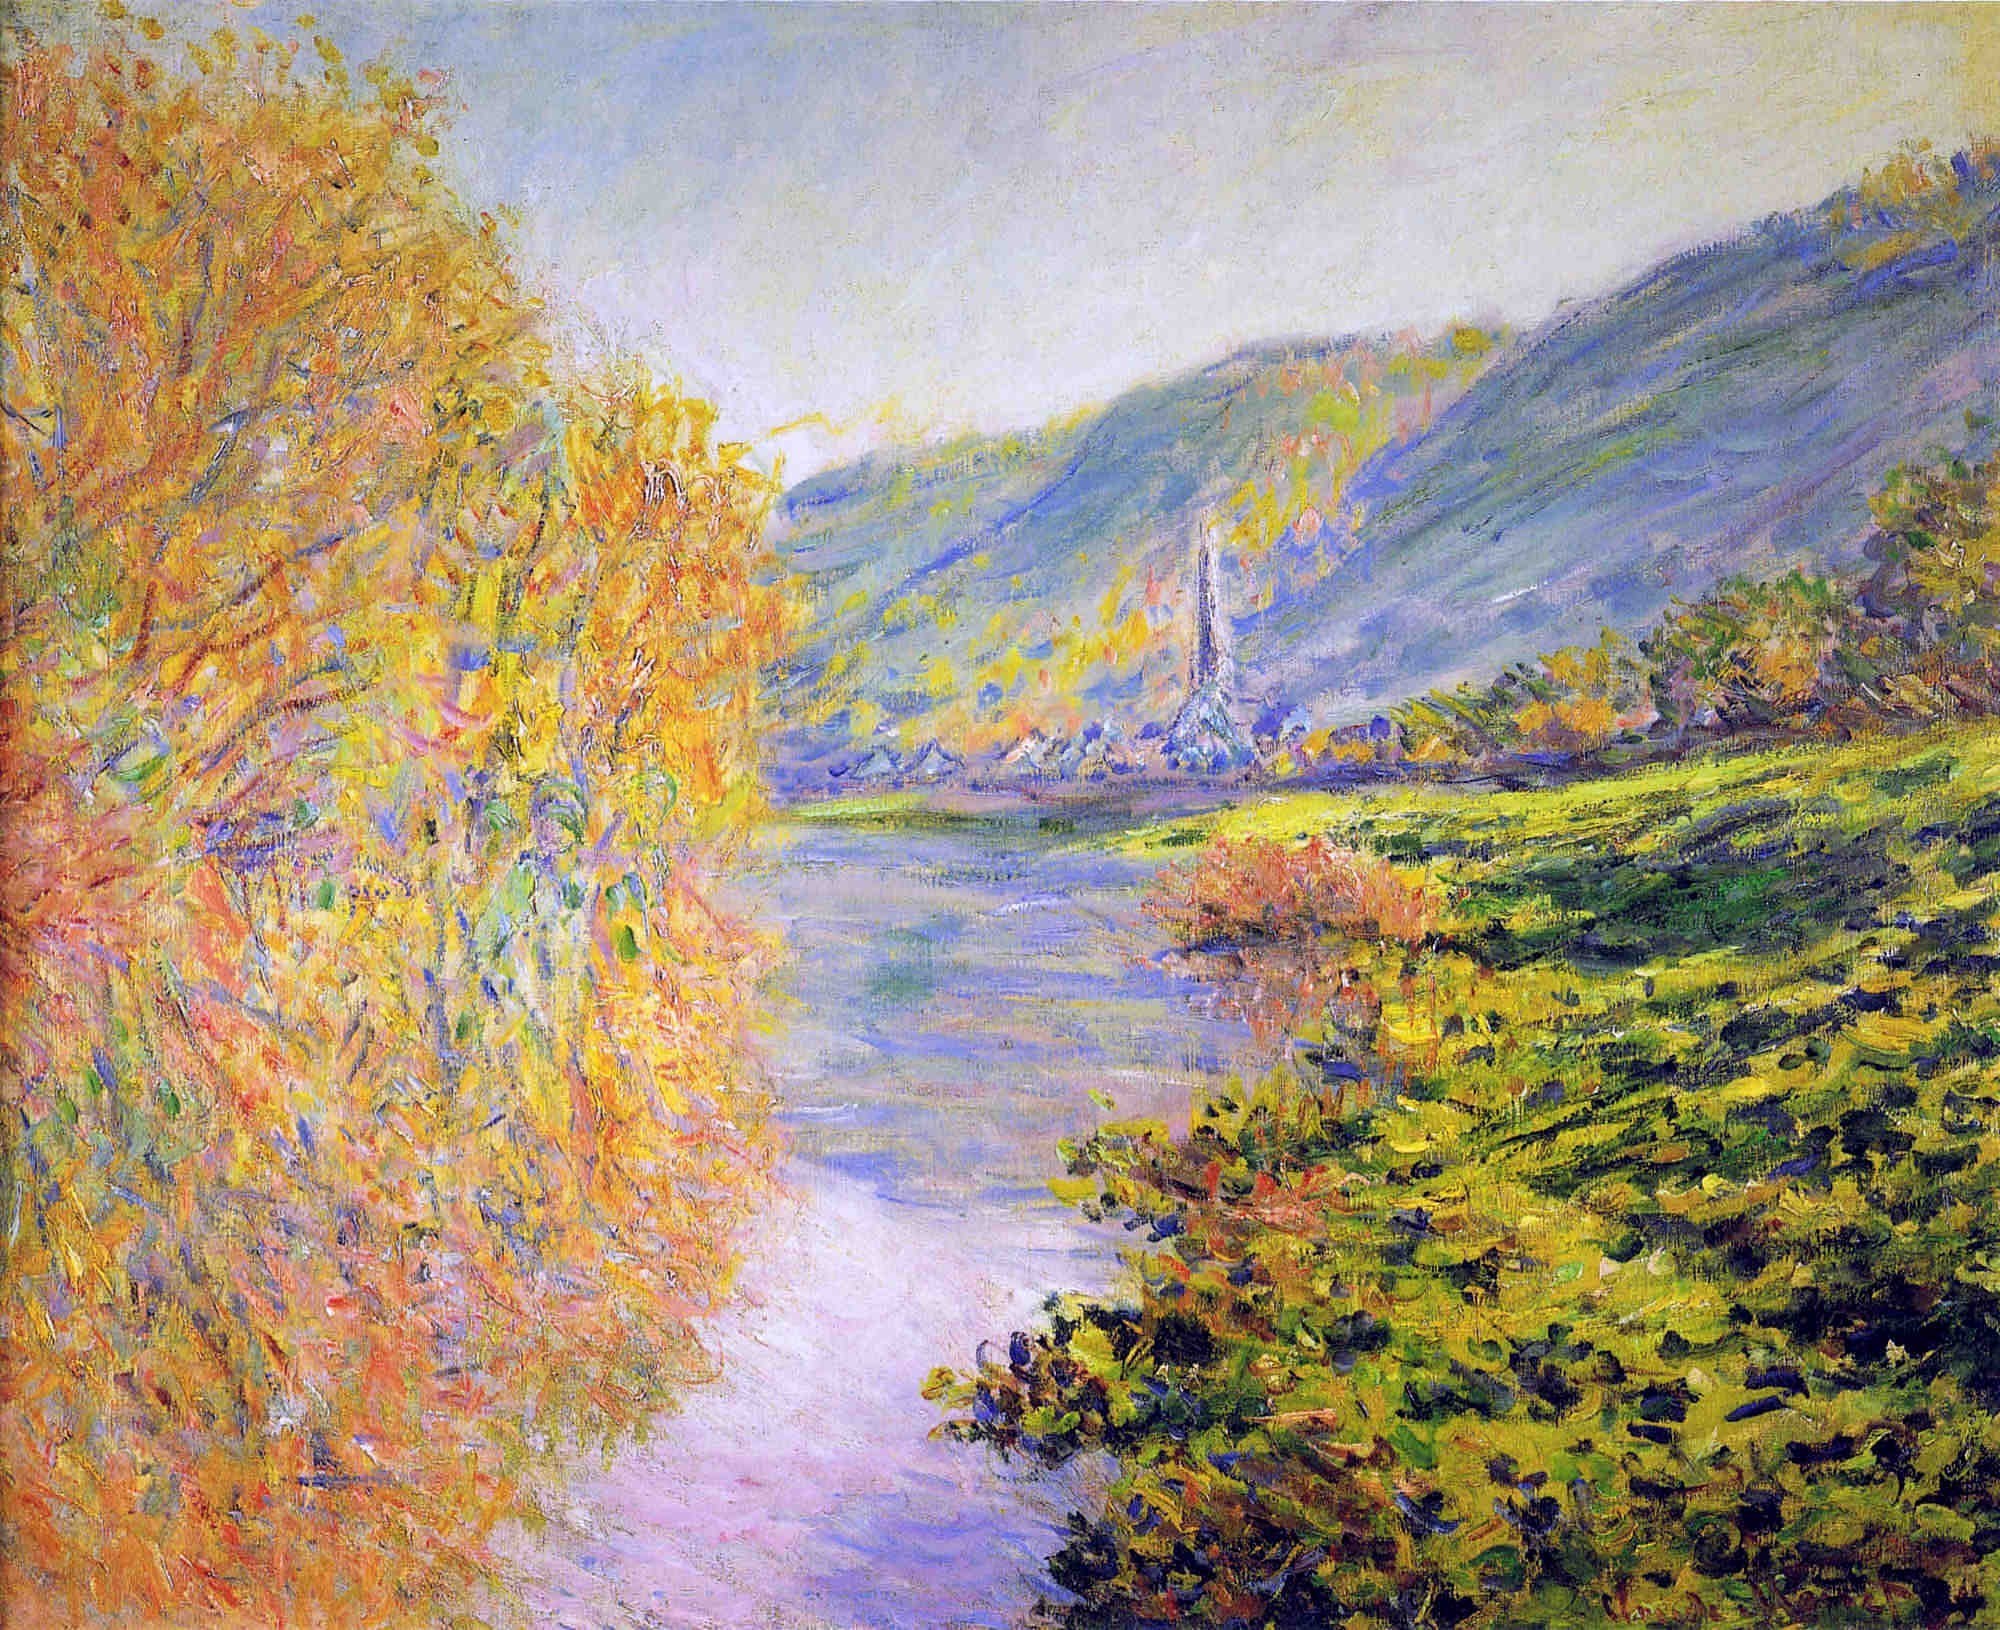 Claude Monet , HD Wallpaper & Backgrounds